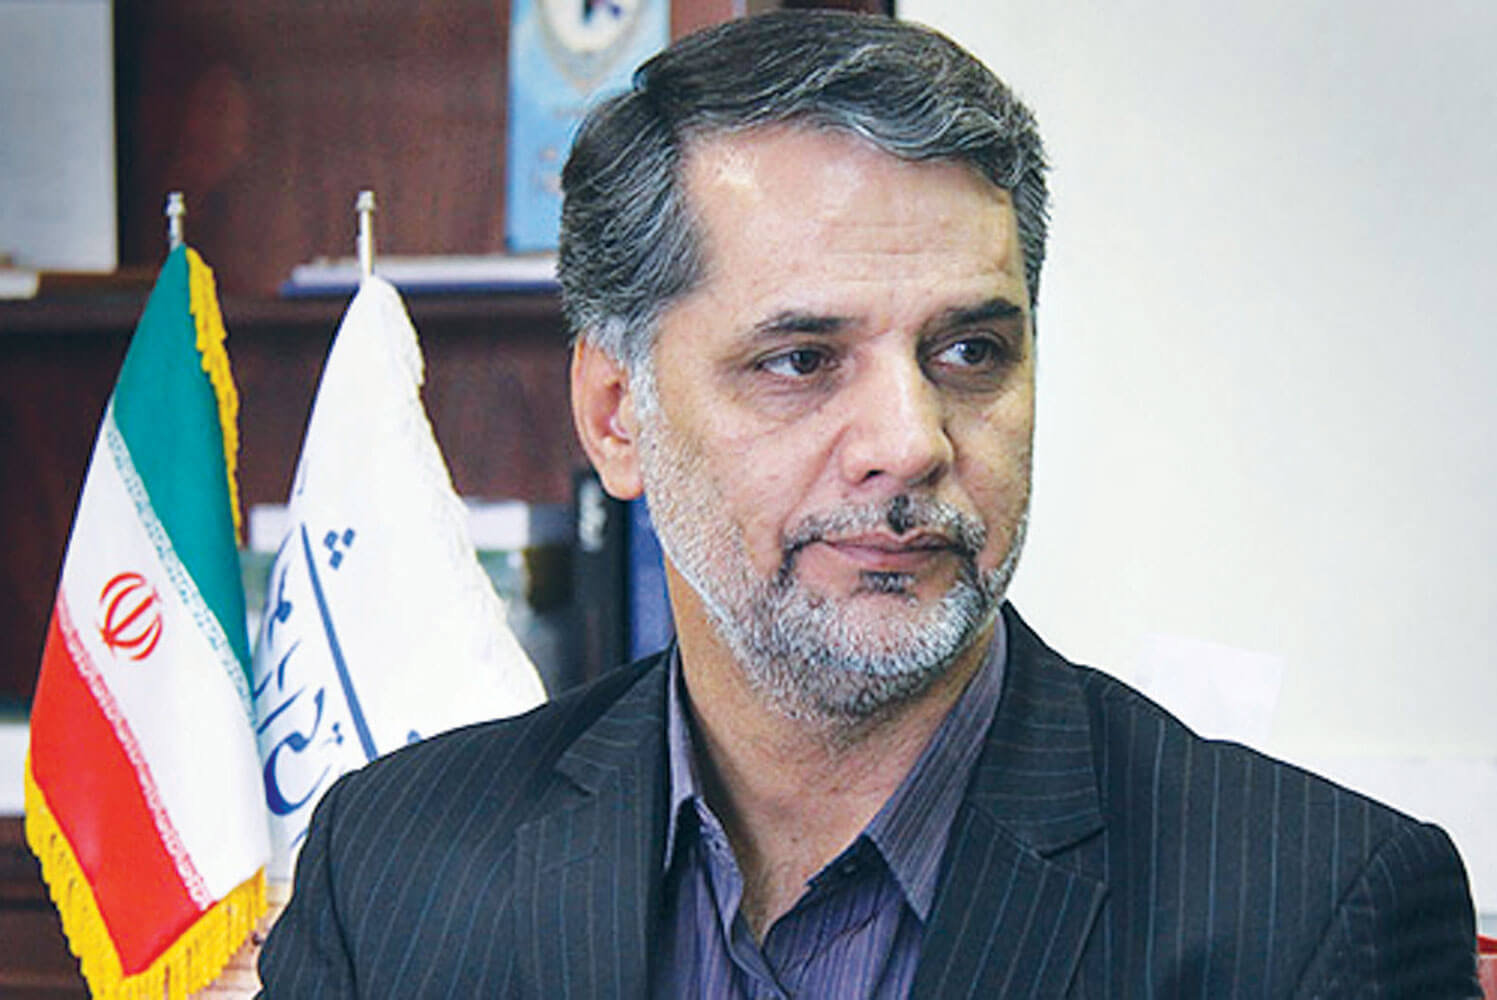 اخبار سیاسی,خبرهای سیاسی,احزاب و شخصیتها,حسین نقوی حسینی